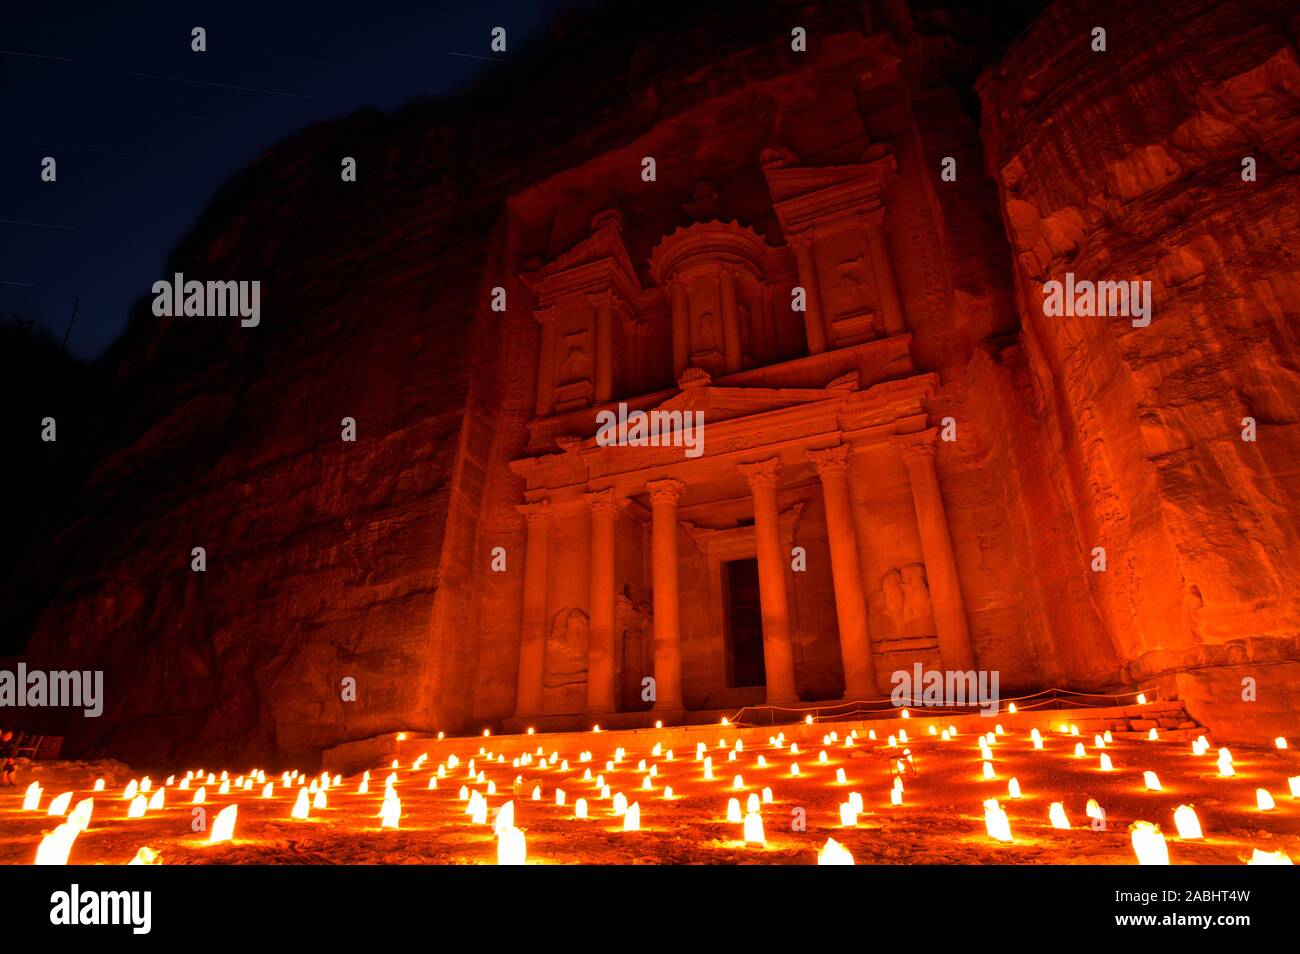 Treasury (Al Khazneh) of Petra Ancient City Illuminated by Candles, Jordan Stock Photo